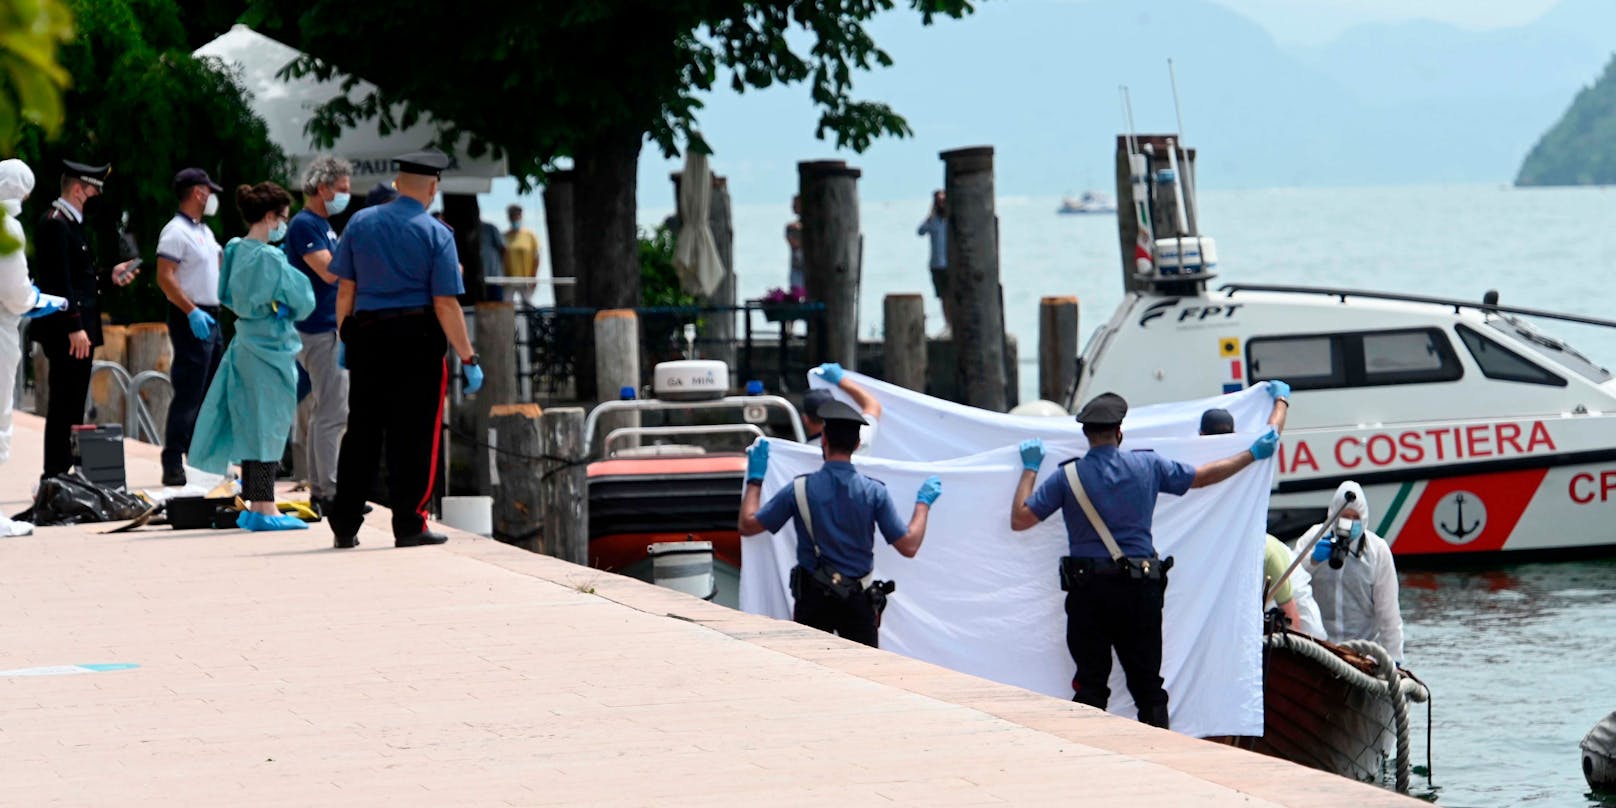 Italienische Ermittler untersuchen das Boot der Opfer